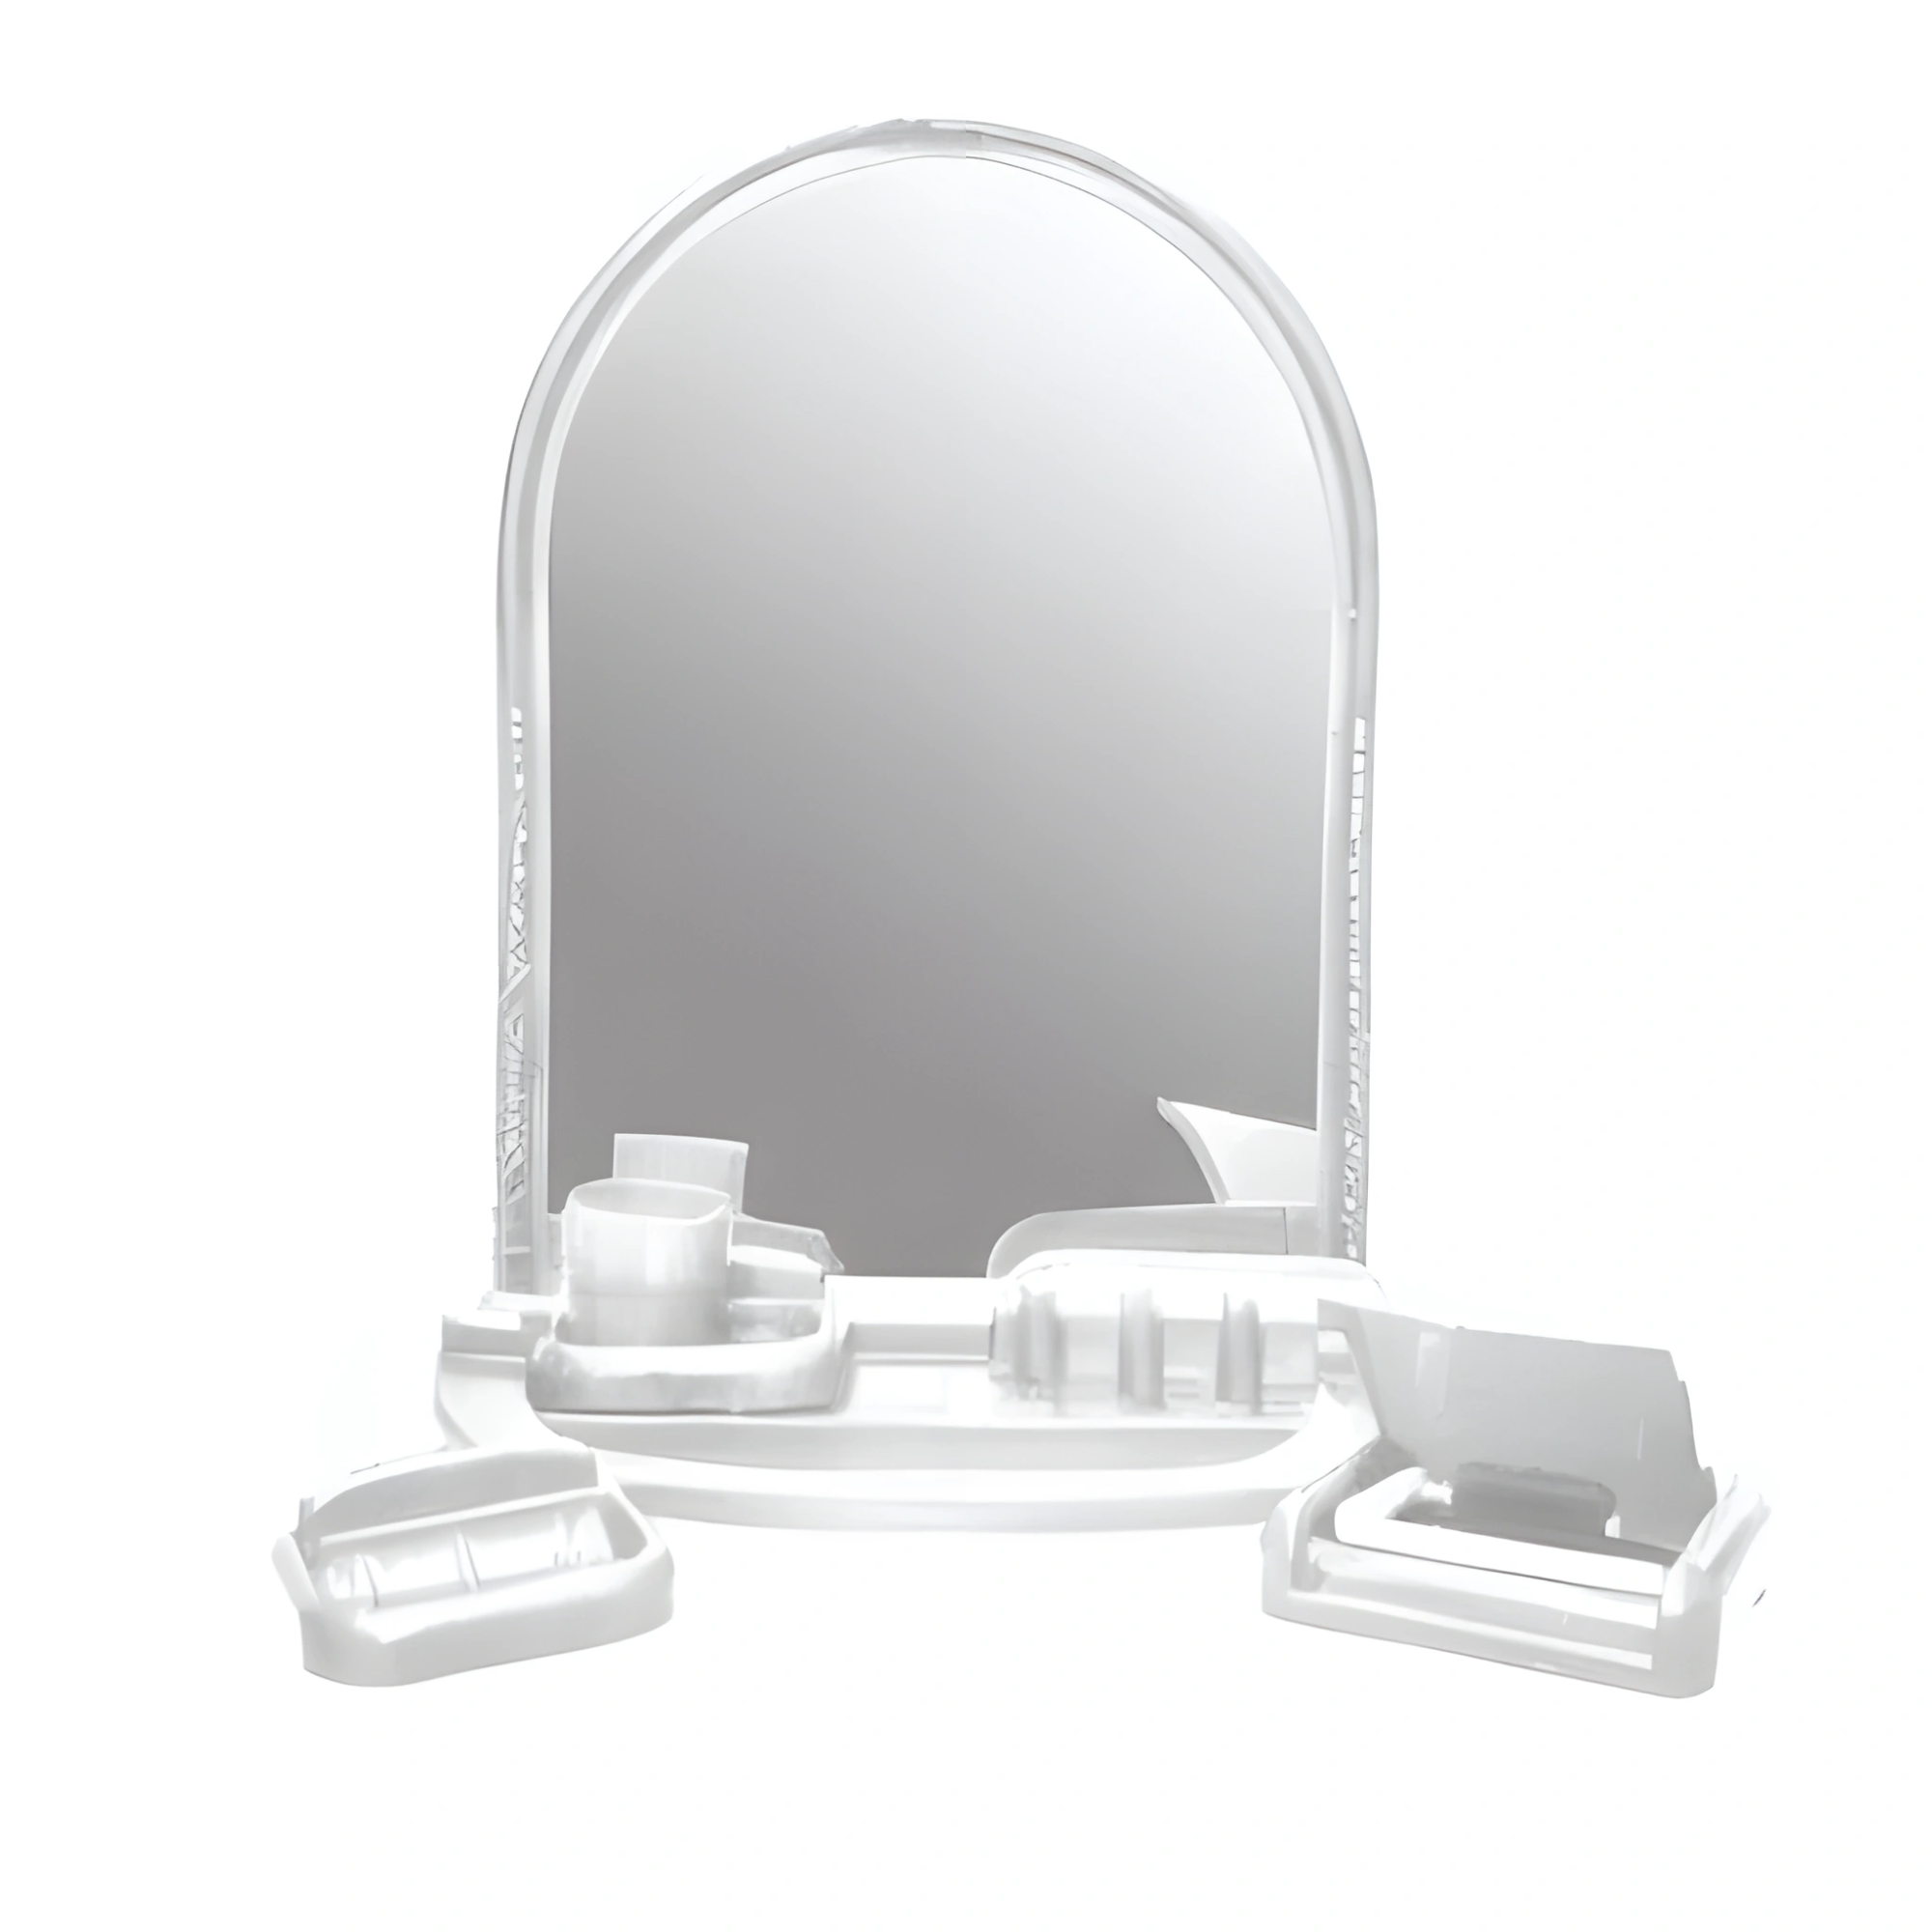 Комплект для ванны с зеркалом. Набор ПМ Д/ванной комнаты 8пр с зеркалом Adria 2001-00. Набор для ванной Адрия 2003 с зеркалом/5. Зеркальный набор для ванной белый, 2001 «Adria». Зеркальный набор Олимпия белый.